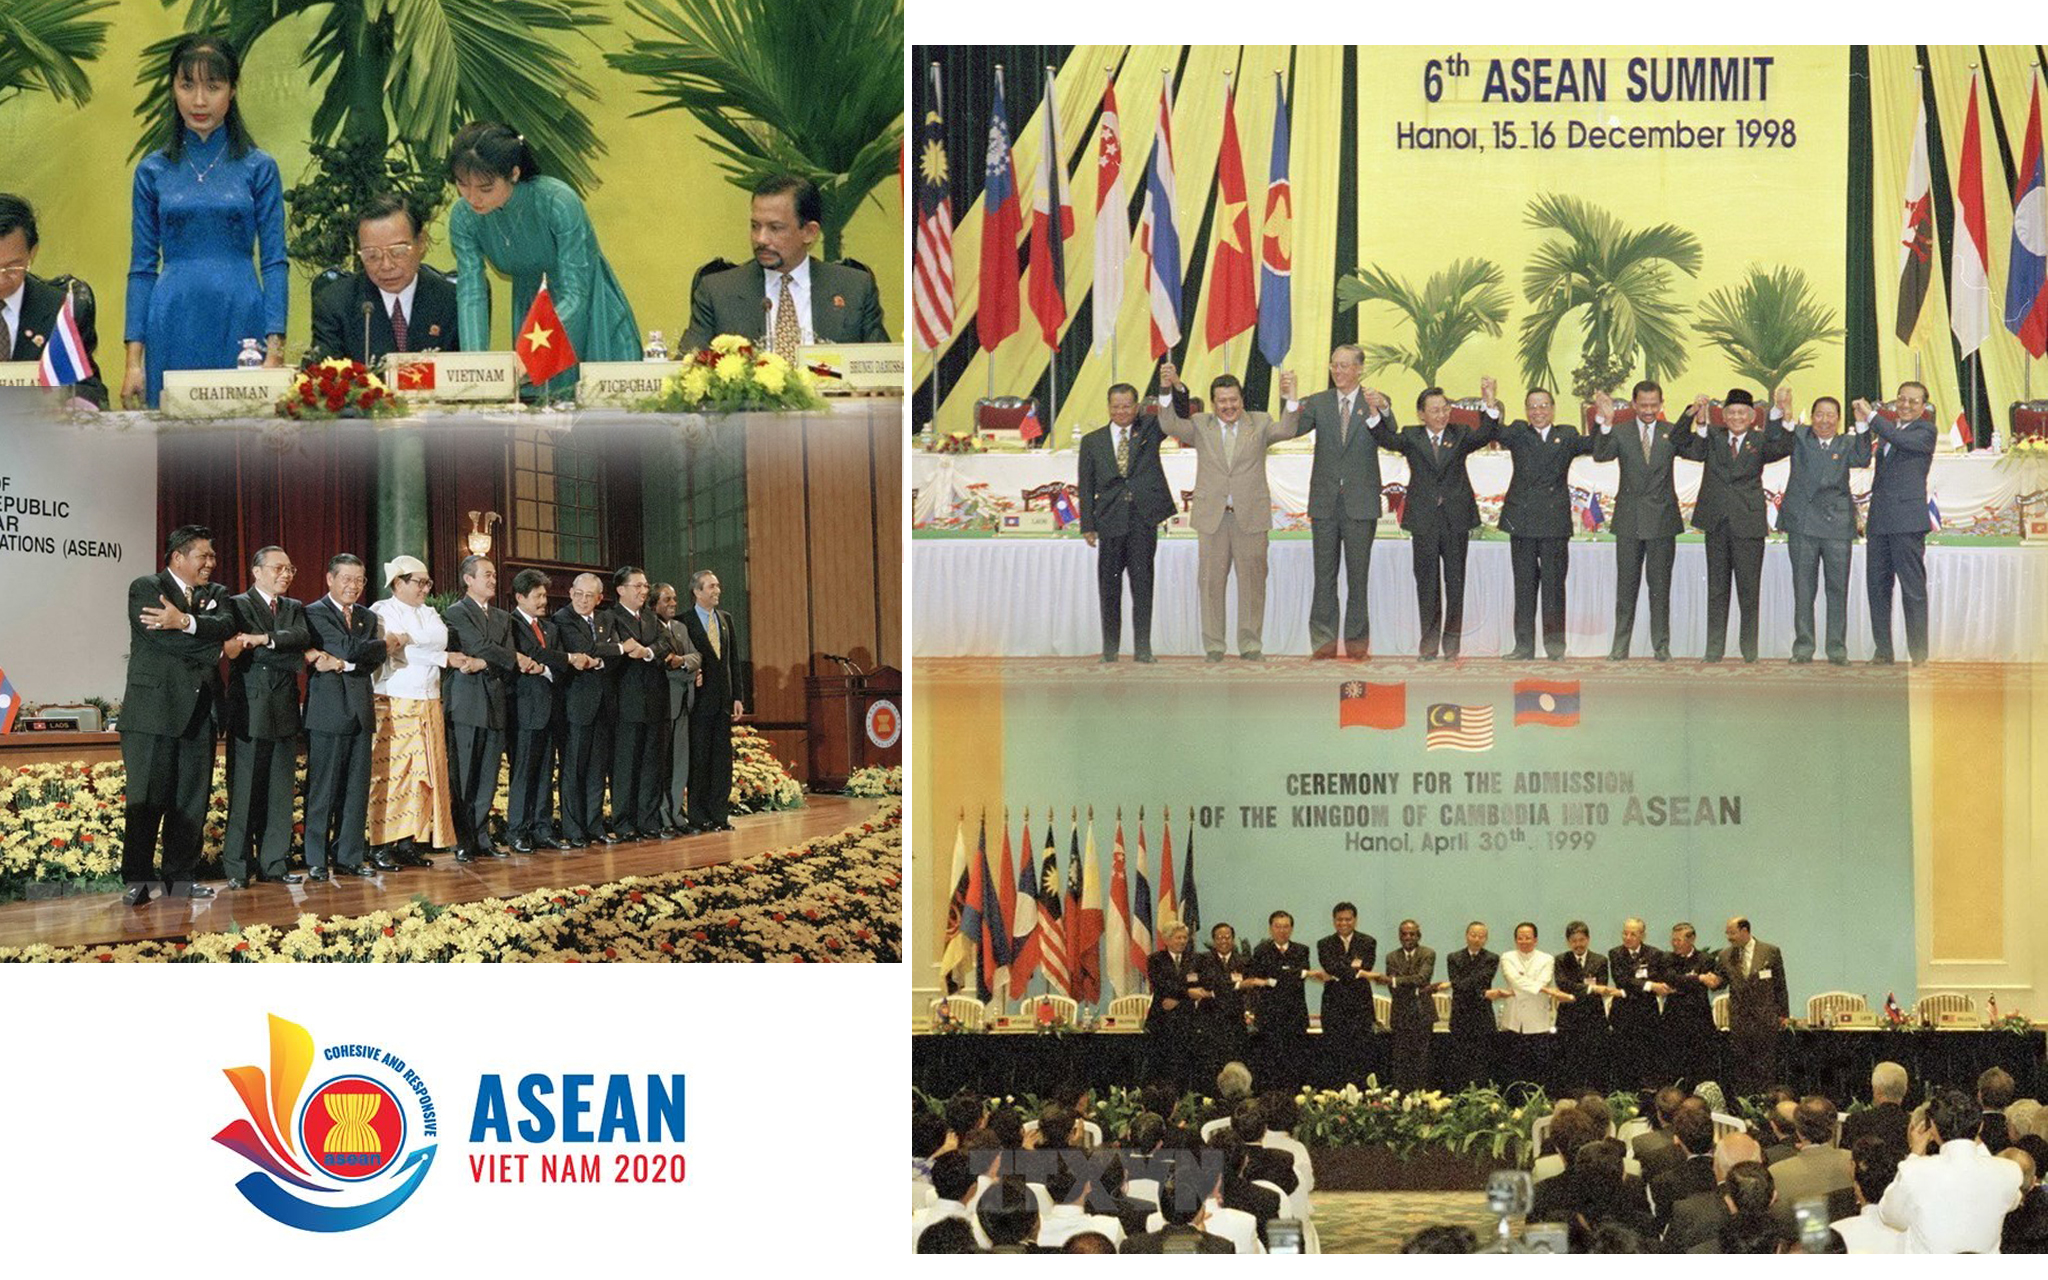 Tháng 12/1998, Việt Nam tổ chức thành công Hội nghị ASEAN lần thứ VI. Đây là lần đầu tiên Việt Nam đăng cai một hội nghị của Hiệp hội kể từ khi gia nhập. ASEAN khi đó đã có 9 thành viên (thêm Lào và Myanmar). Các nhà lãnh đạo nhất trí thông qua Chương trình Hành động Hà Nội, góp phần tăng cường đoàn kết, đẩy mạnh hợp tác, khôi phục hình ảnh ASEAN và định hướng phát triển. Trong ảnh: Thủ tướng Phan Văn Khải (giữa) và các nhà lãnh đạo ASEAN chụp ảnh chung tại Phiên bế mạc Hội nghị cấp cao ASEAN lần thứ 6, diễn ra tại Hà Nội từ 15-16/12/1998. (Ảnh: Thế Thuần/TTXVN)